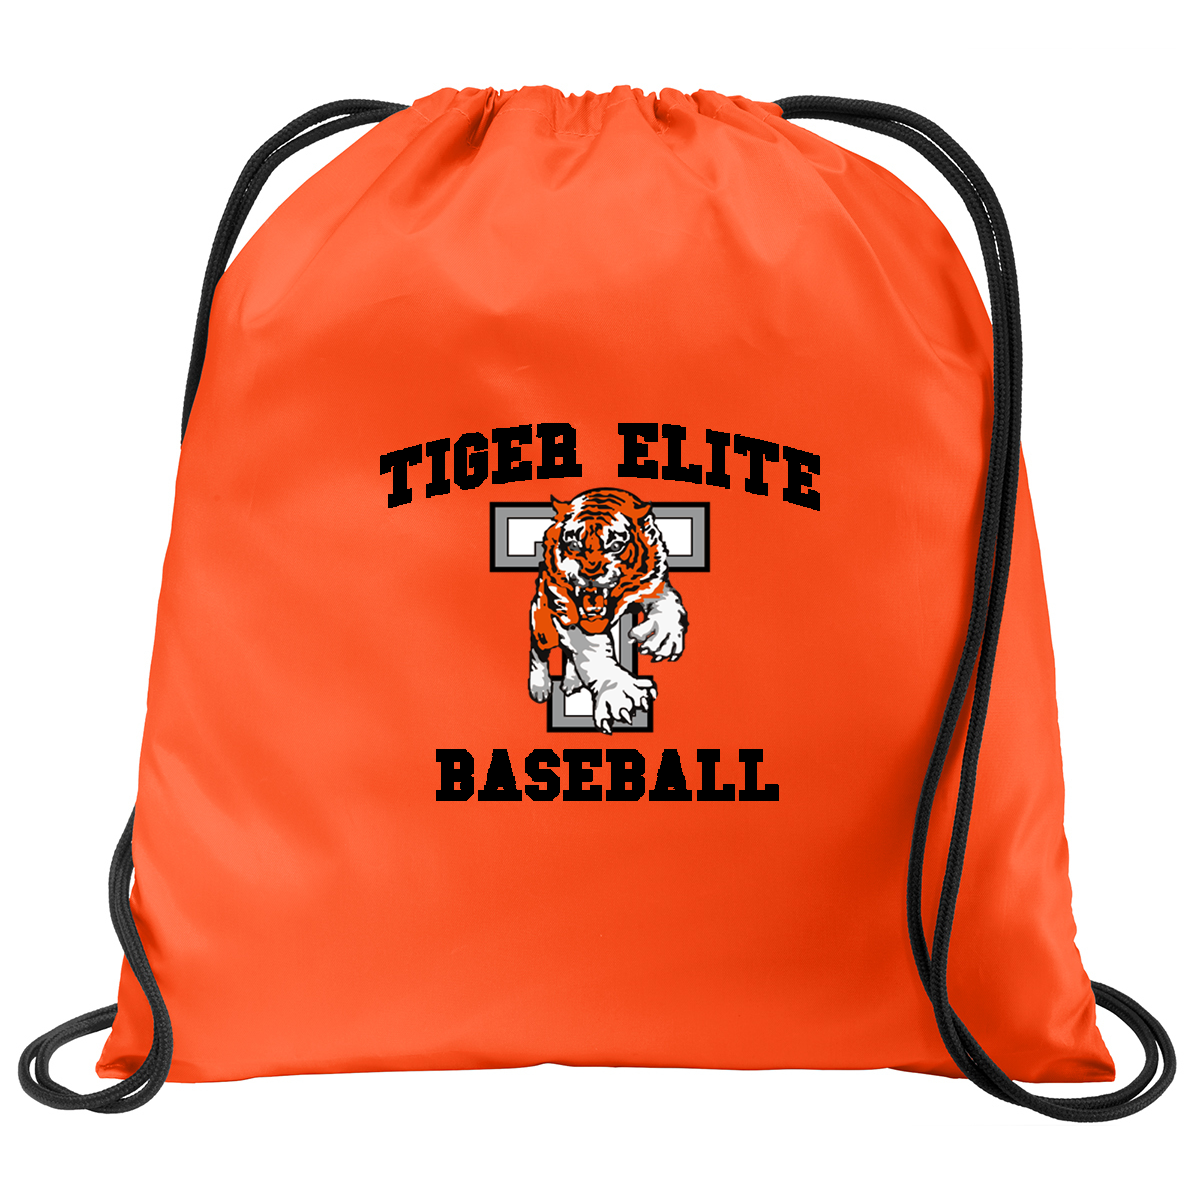 Tiger Elite Baseball Cinch Pack